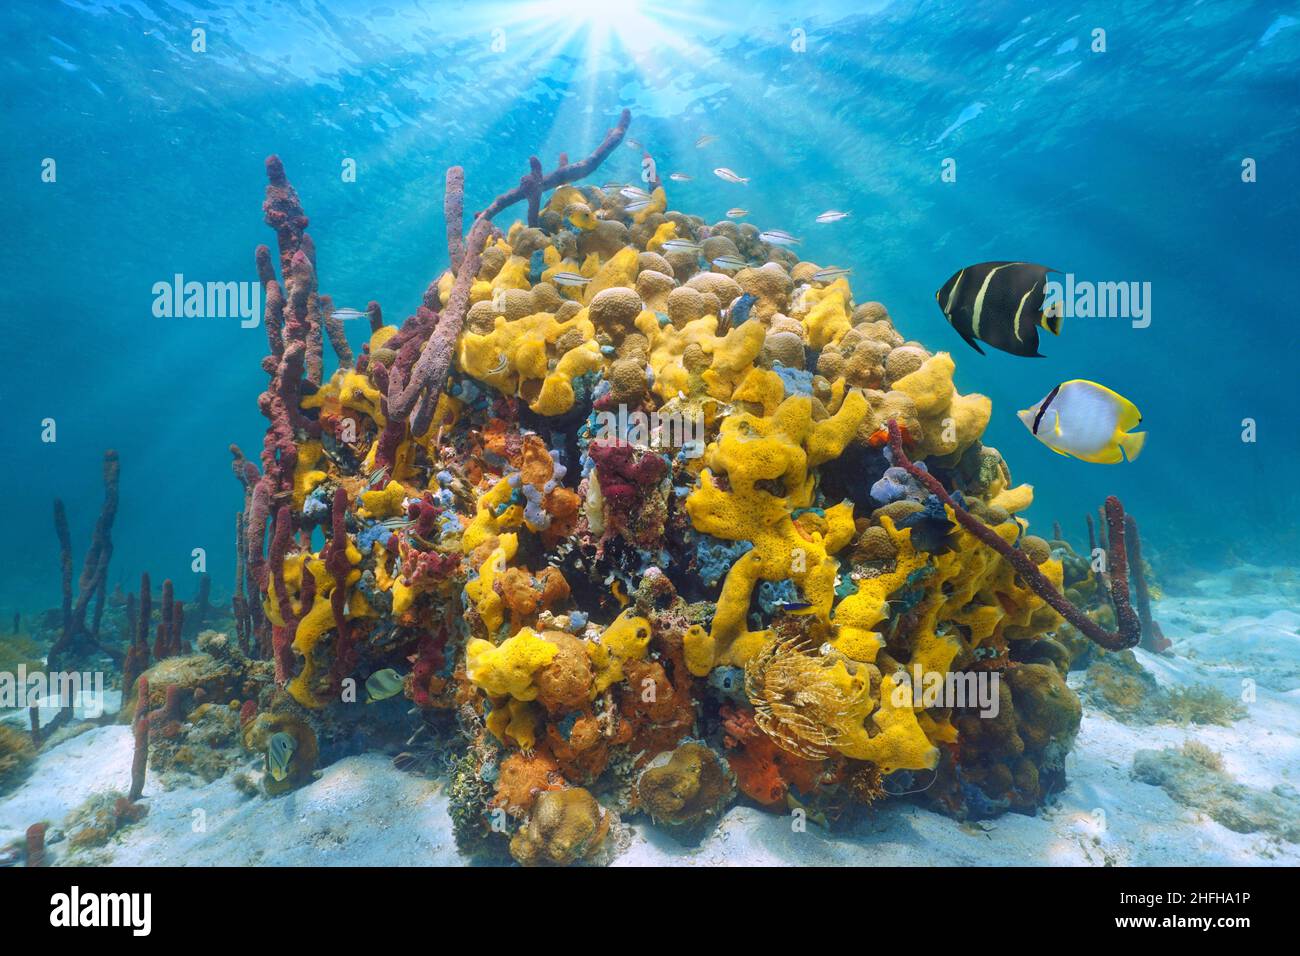 Vida marina colorida en el mar, paisaje marino subacuático, coral con esponjas marinas y peces tropicales, Caribe, Centroamérica, Panamá Foto de stock